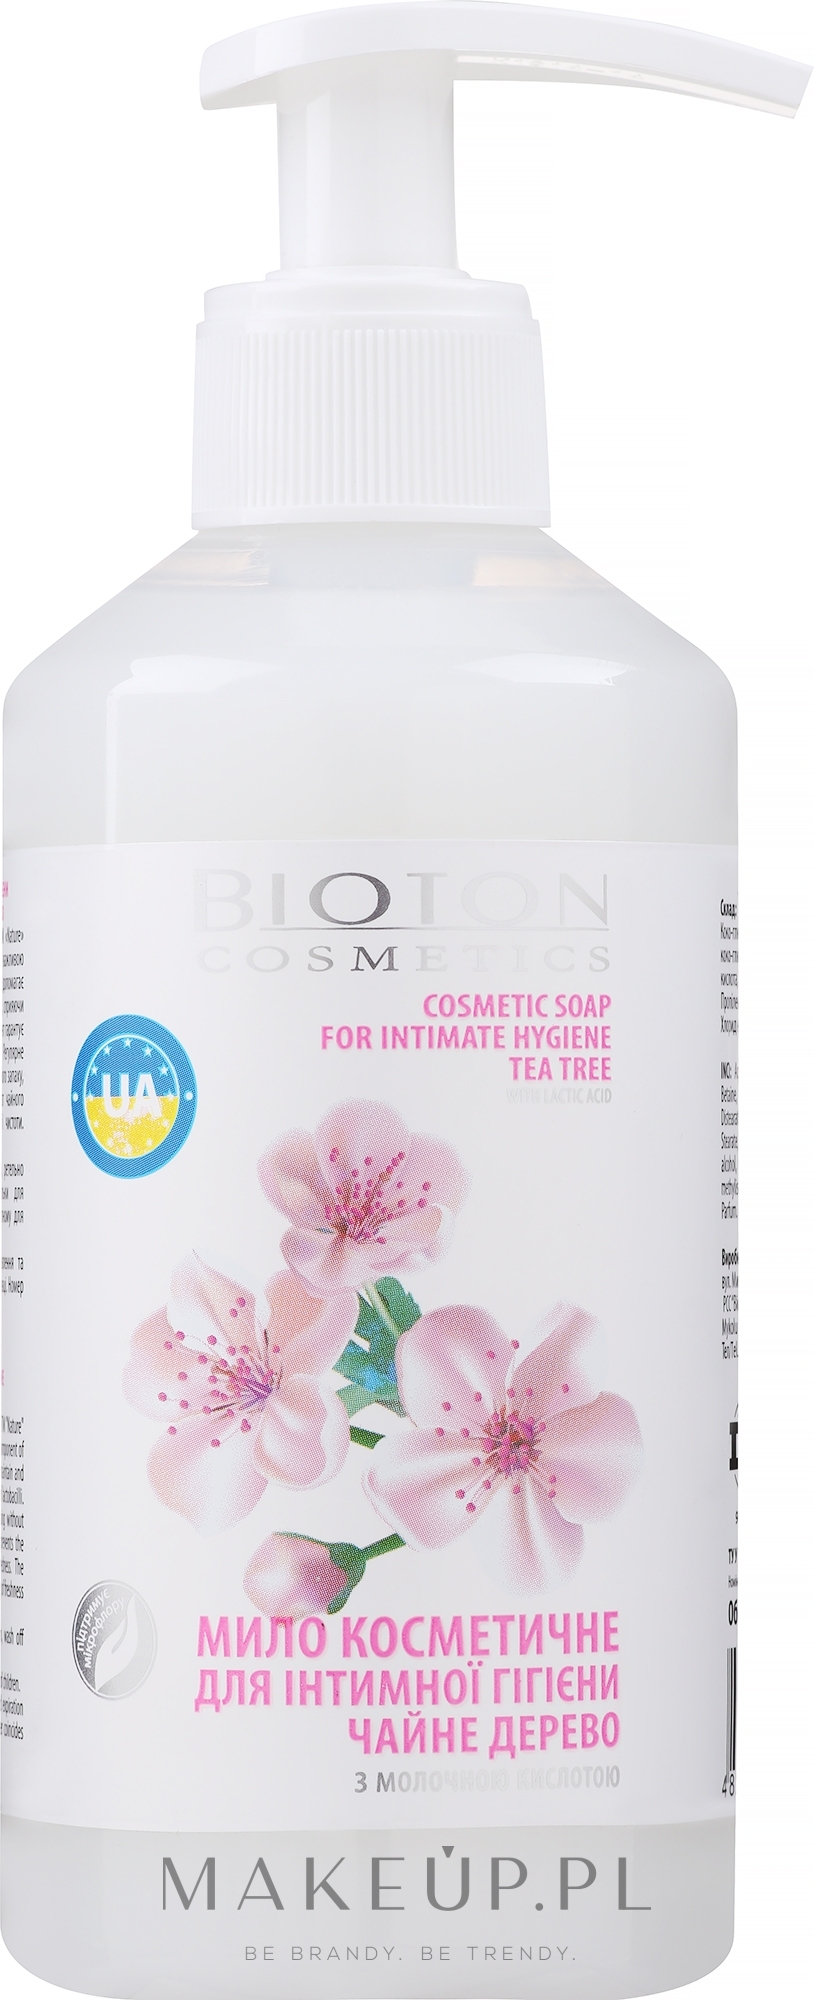 Mydło kosmetyczne do higieny intymnej Drzewo herbaciane - Bioton Cosmetics Nature — Zdjęcie 300 ml